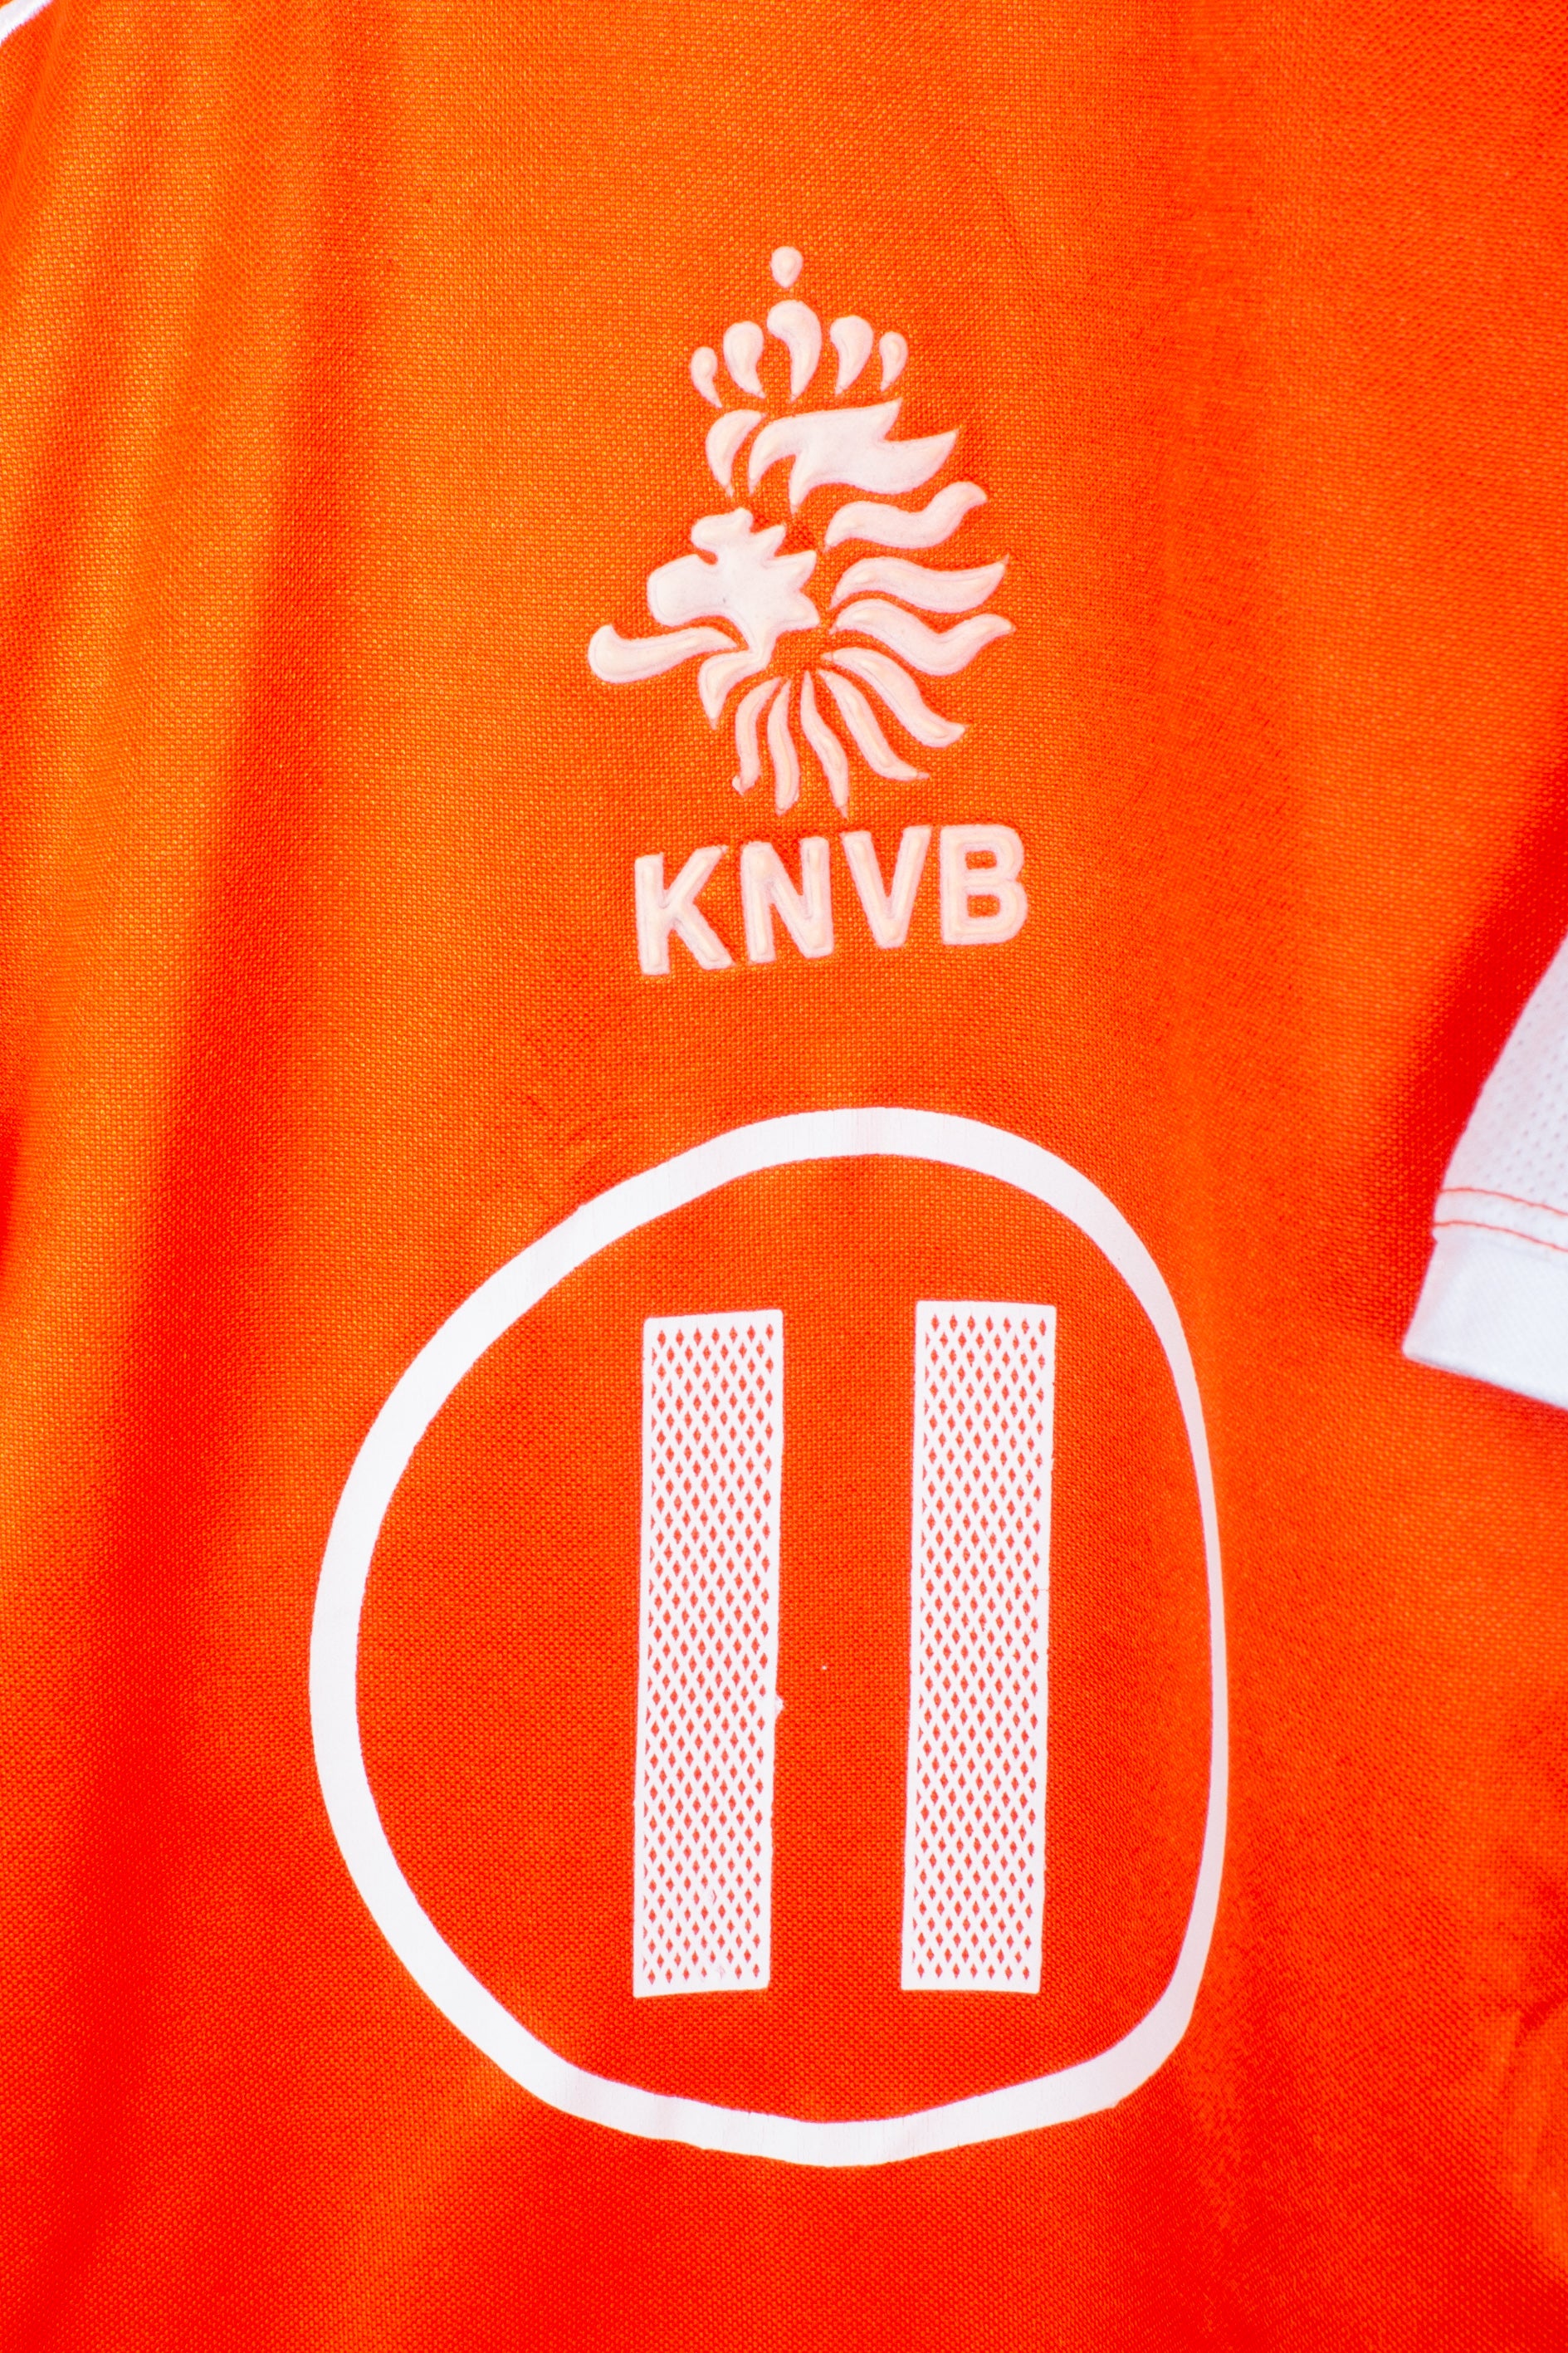 Netherlands 2004 Home Shirt (van der Vaart #11) (XS)